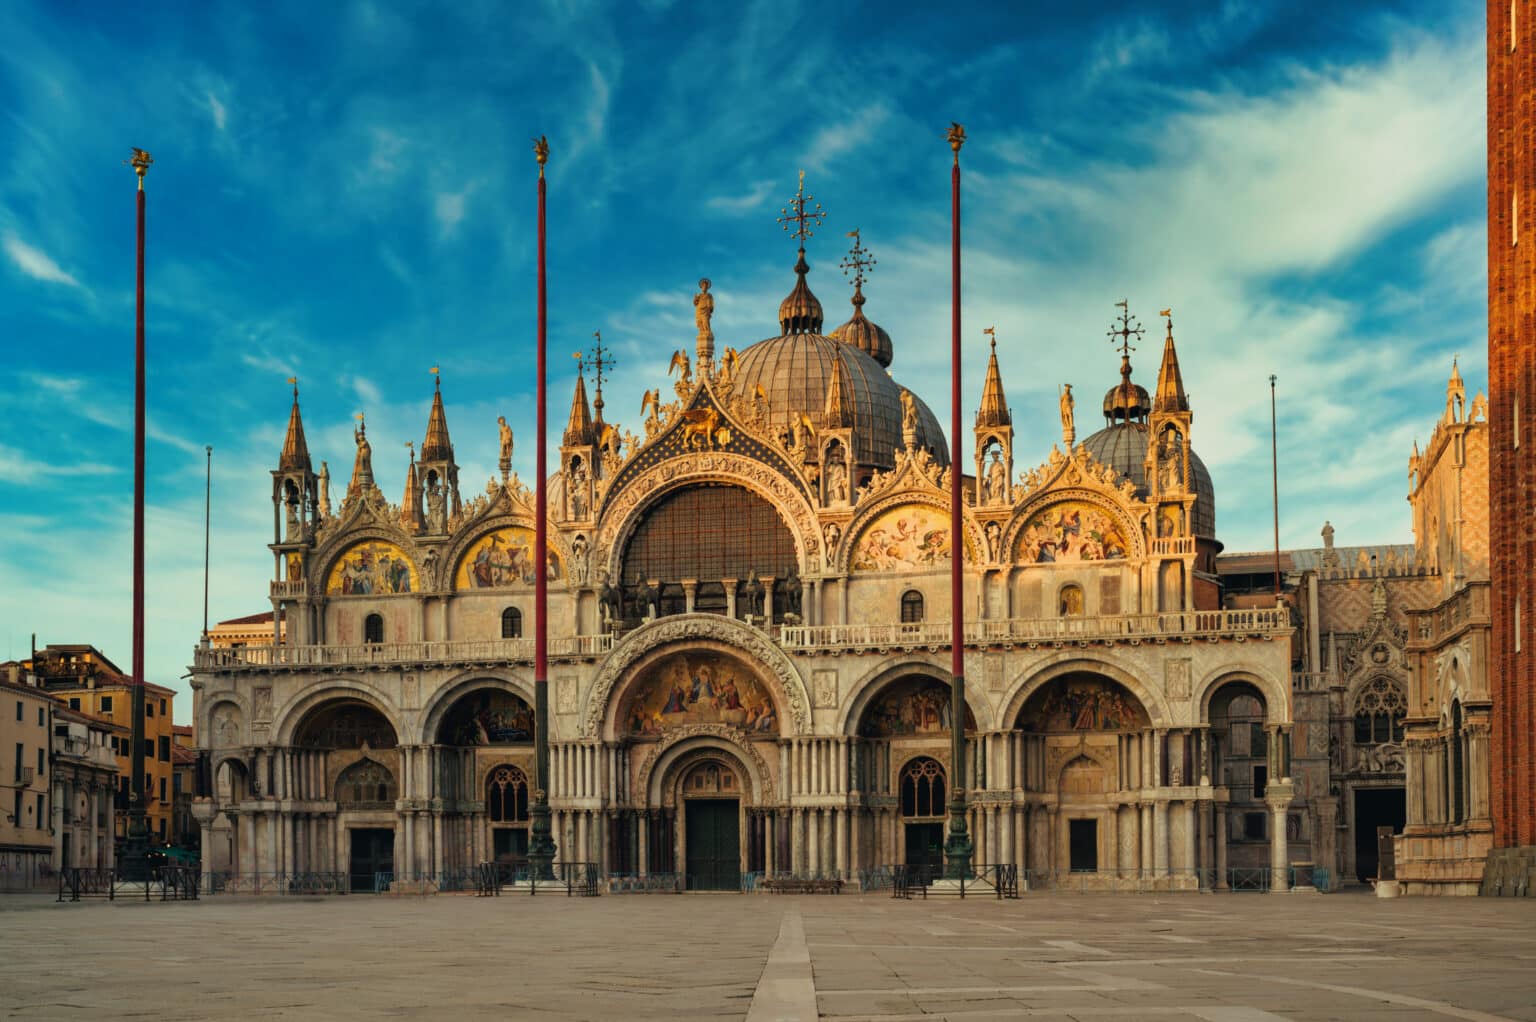 Basilica San Marco, Venice - Italy